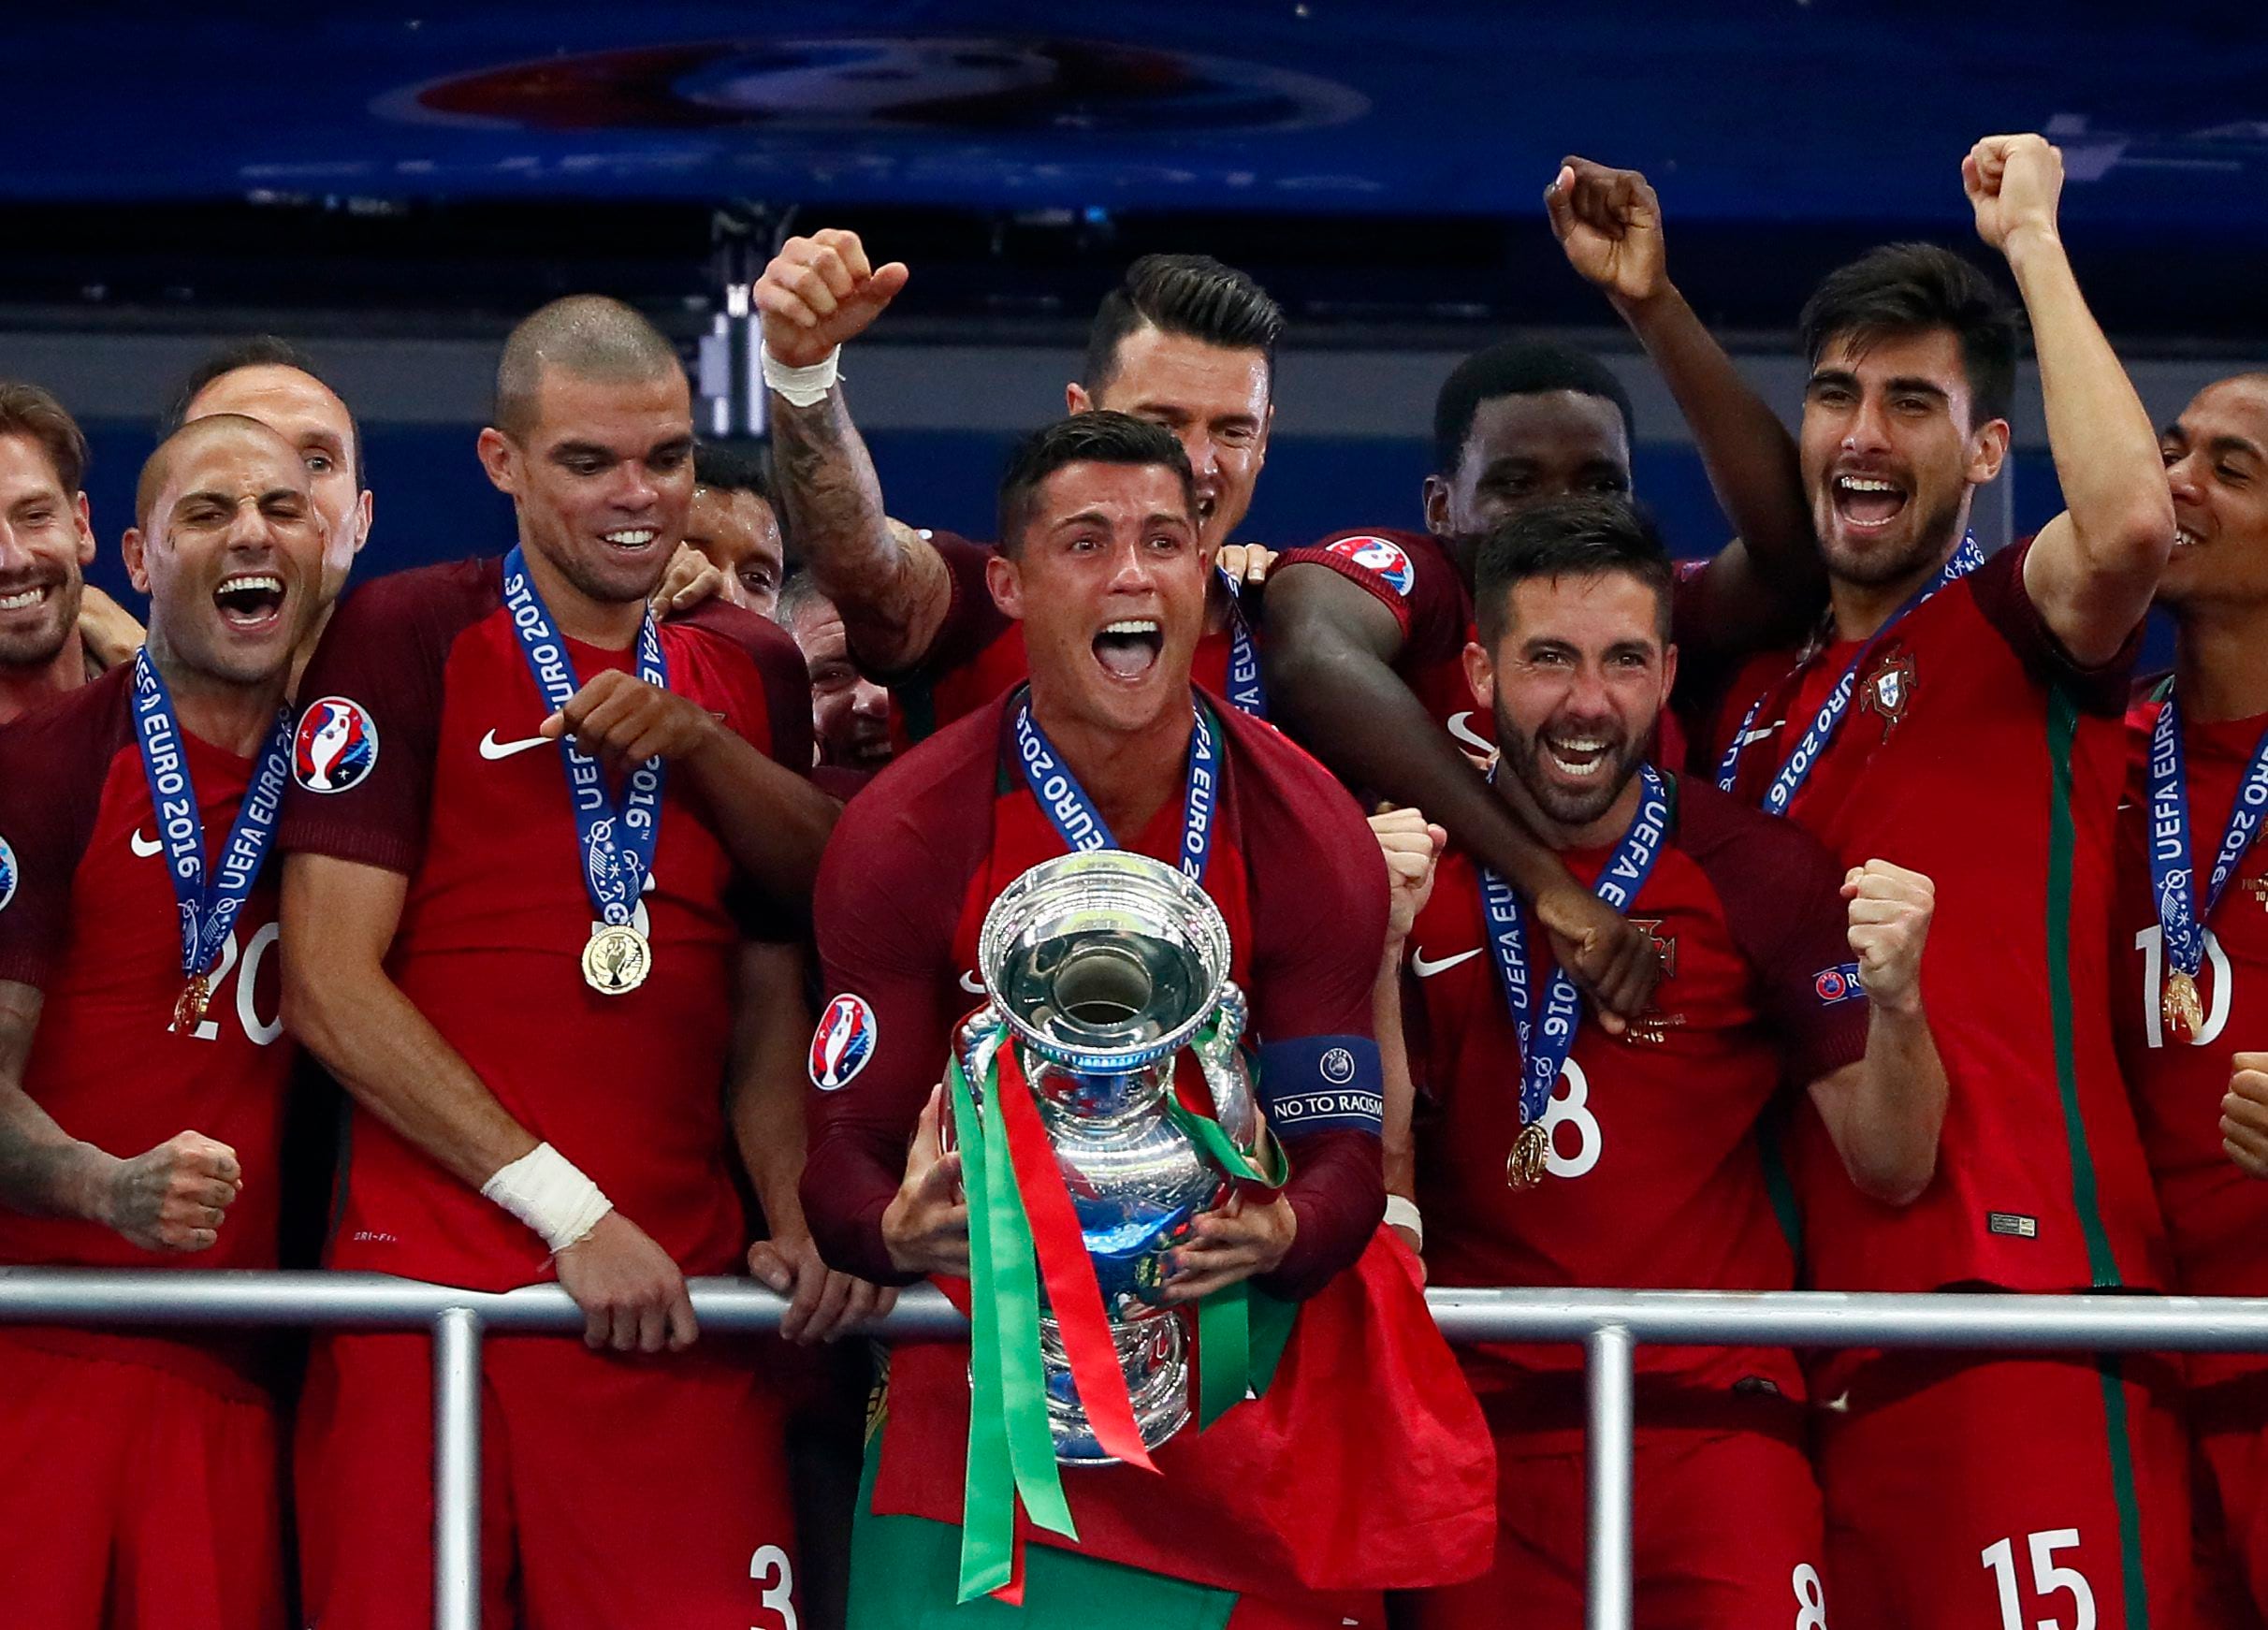 Portugal leva título da Euro com apenas uma vitória no tempo normal - 10/07/ 2016 - Esporte - Folha de S.Paulo